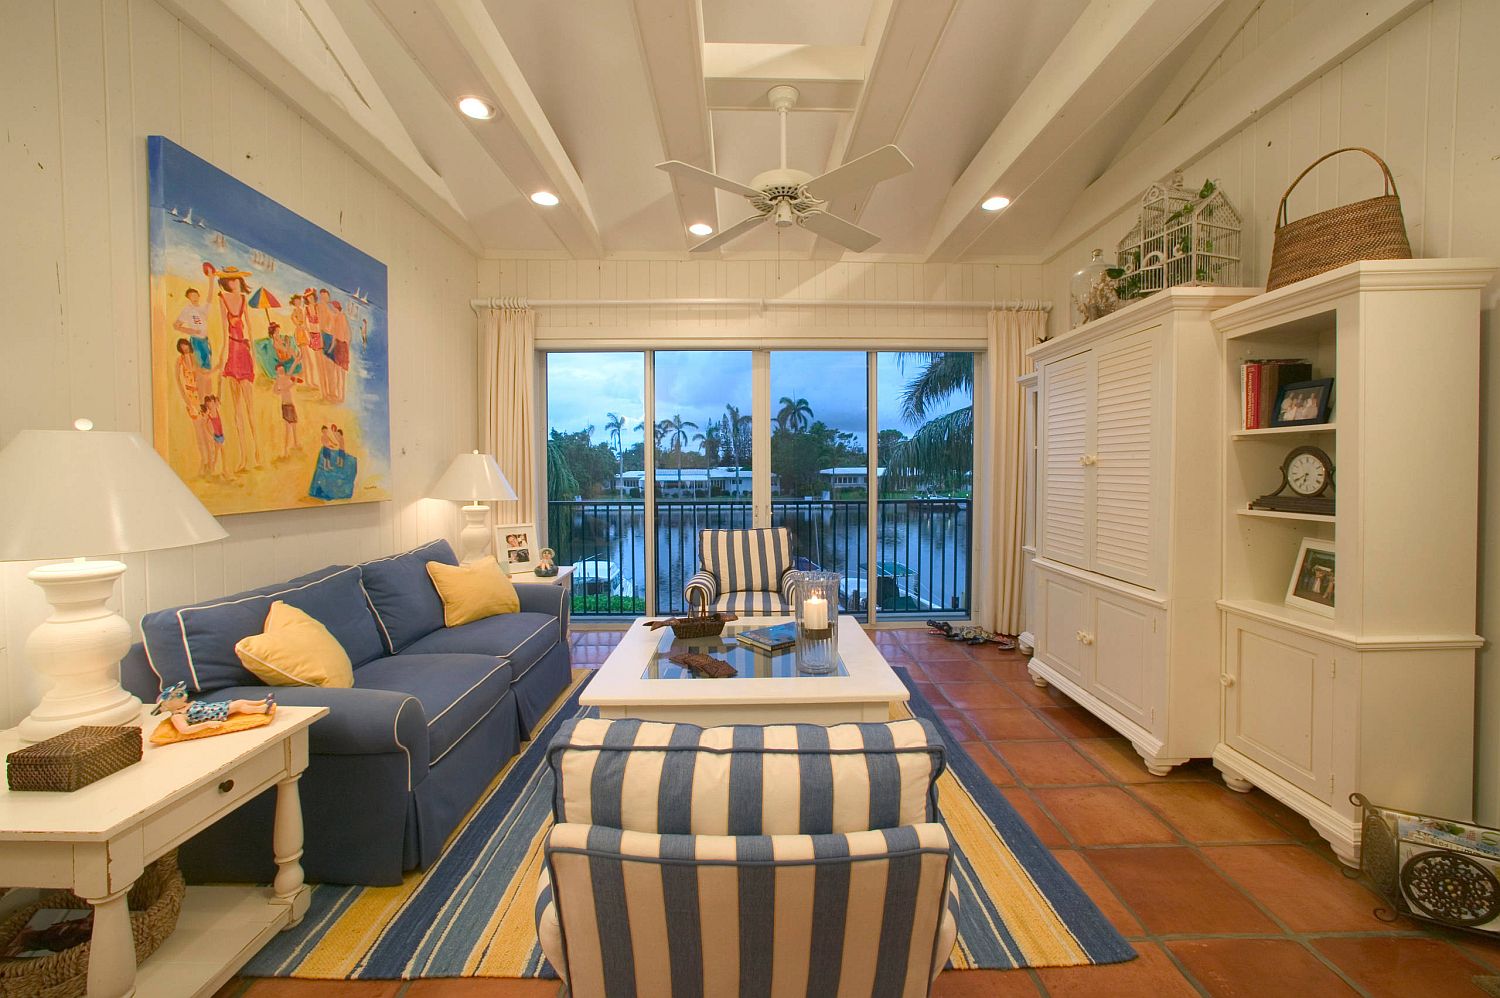 Hình ảnh phòng khách phong cách bãi biển với sofa màu xanh dương, ghế bọc nệm kẻ sọc